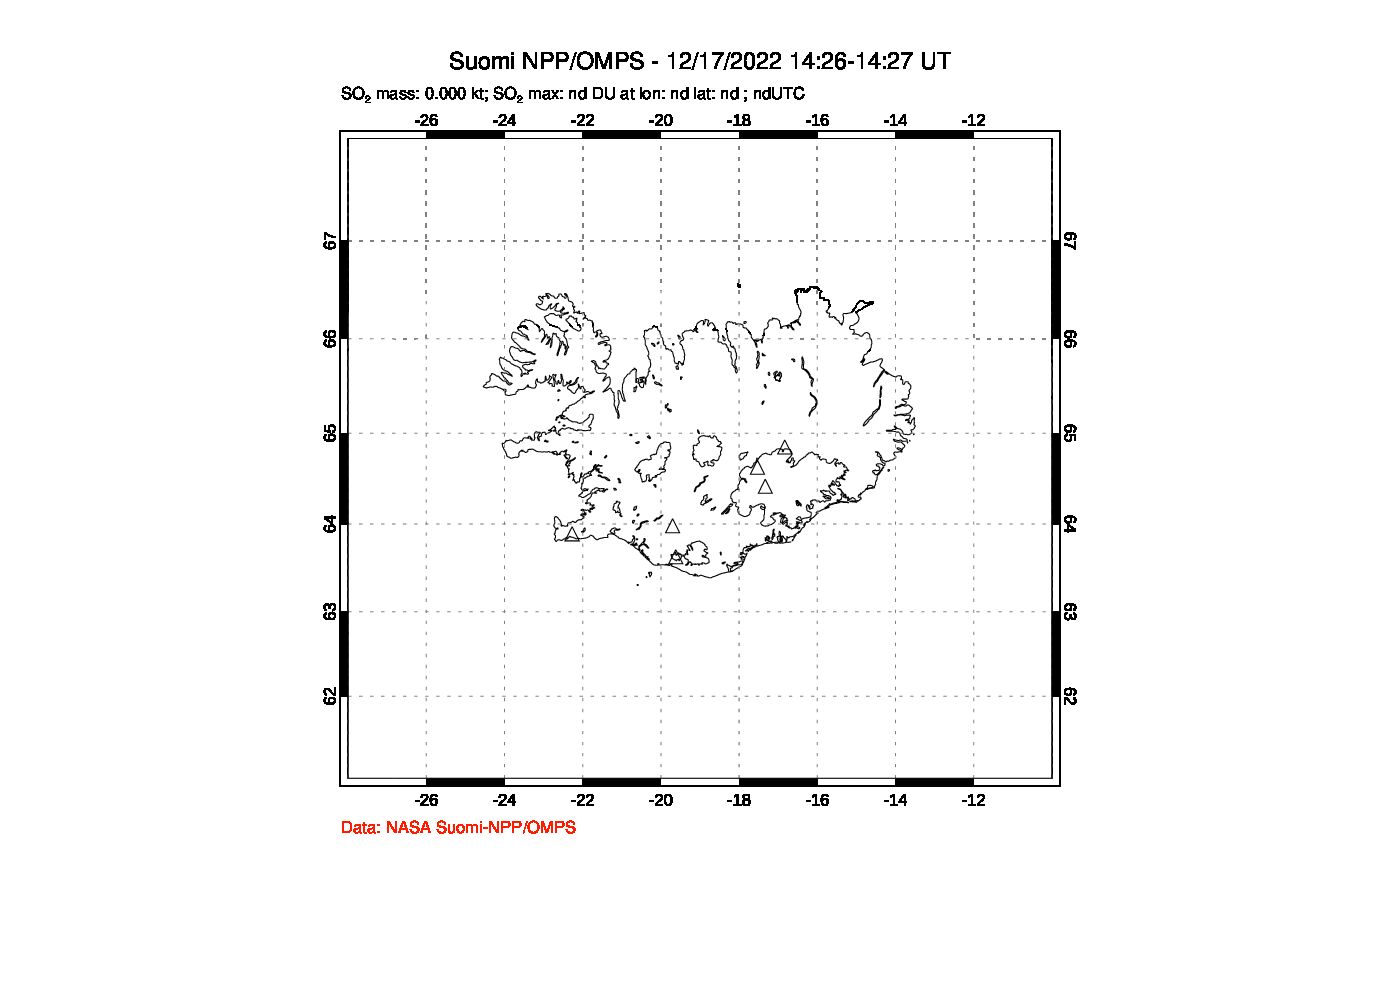 A sulfur dioxide image over Iceland on Dec 17, 2022.